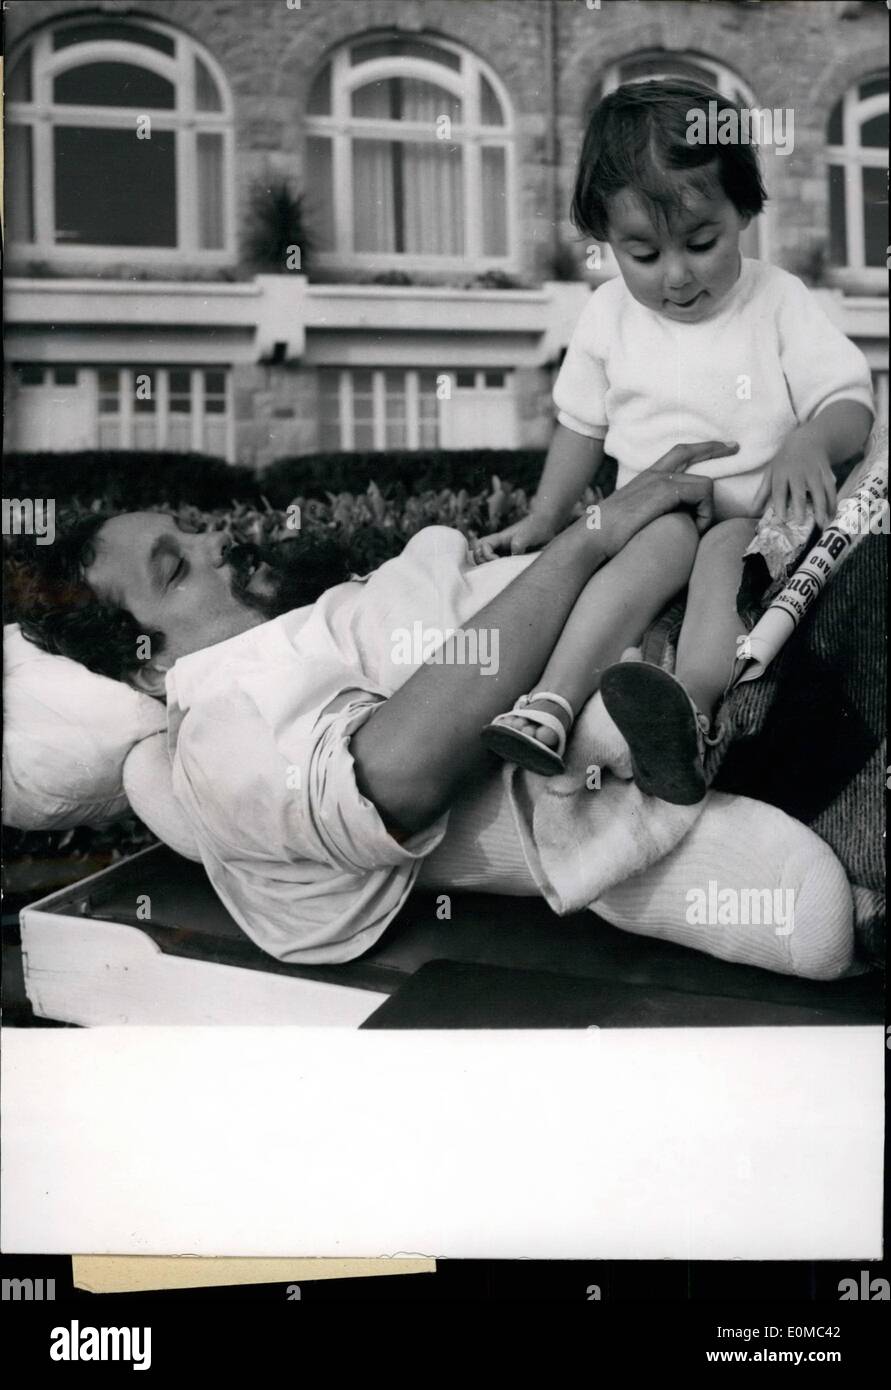 8. August 1954 - 'Schiffbruch' DOCTOR BOMBERD RECVERS von Wirbelsäulen OPERATION DR. ALAIN BONBARD, das berühmte Schiffswrack "NAVIGATOR spielt mit seiner drei - jährigen Tochter IN der Garten-PK der Klinik in TRENBEURDEN, wo er RECOVERRIN von einer WIRBELSÄULENOPERATION ist. DR. BOMBARDIERT, IT UND LÄUFER WERDEN RELESHERED, UNTERNAHM EINE EINSAME REISE NACH WESTEN INNEN AN BORD SEINER SCHALUPPE MIT VERPFLICHTETE SICH, NUR SOLCHE LEBENSMITTEL WIE WÜRDE PREMIT, UNFREUNDLICH, EIN SHPIWRECKED SAGTE. Stockfoto